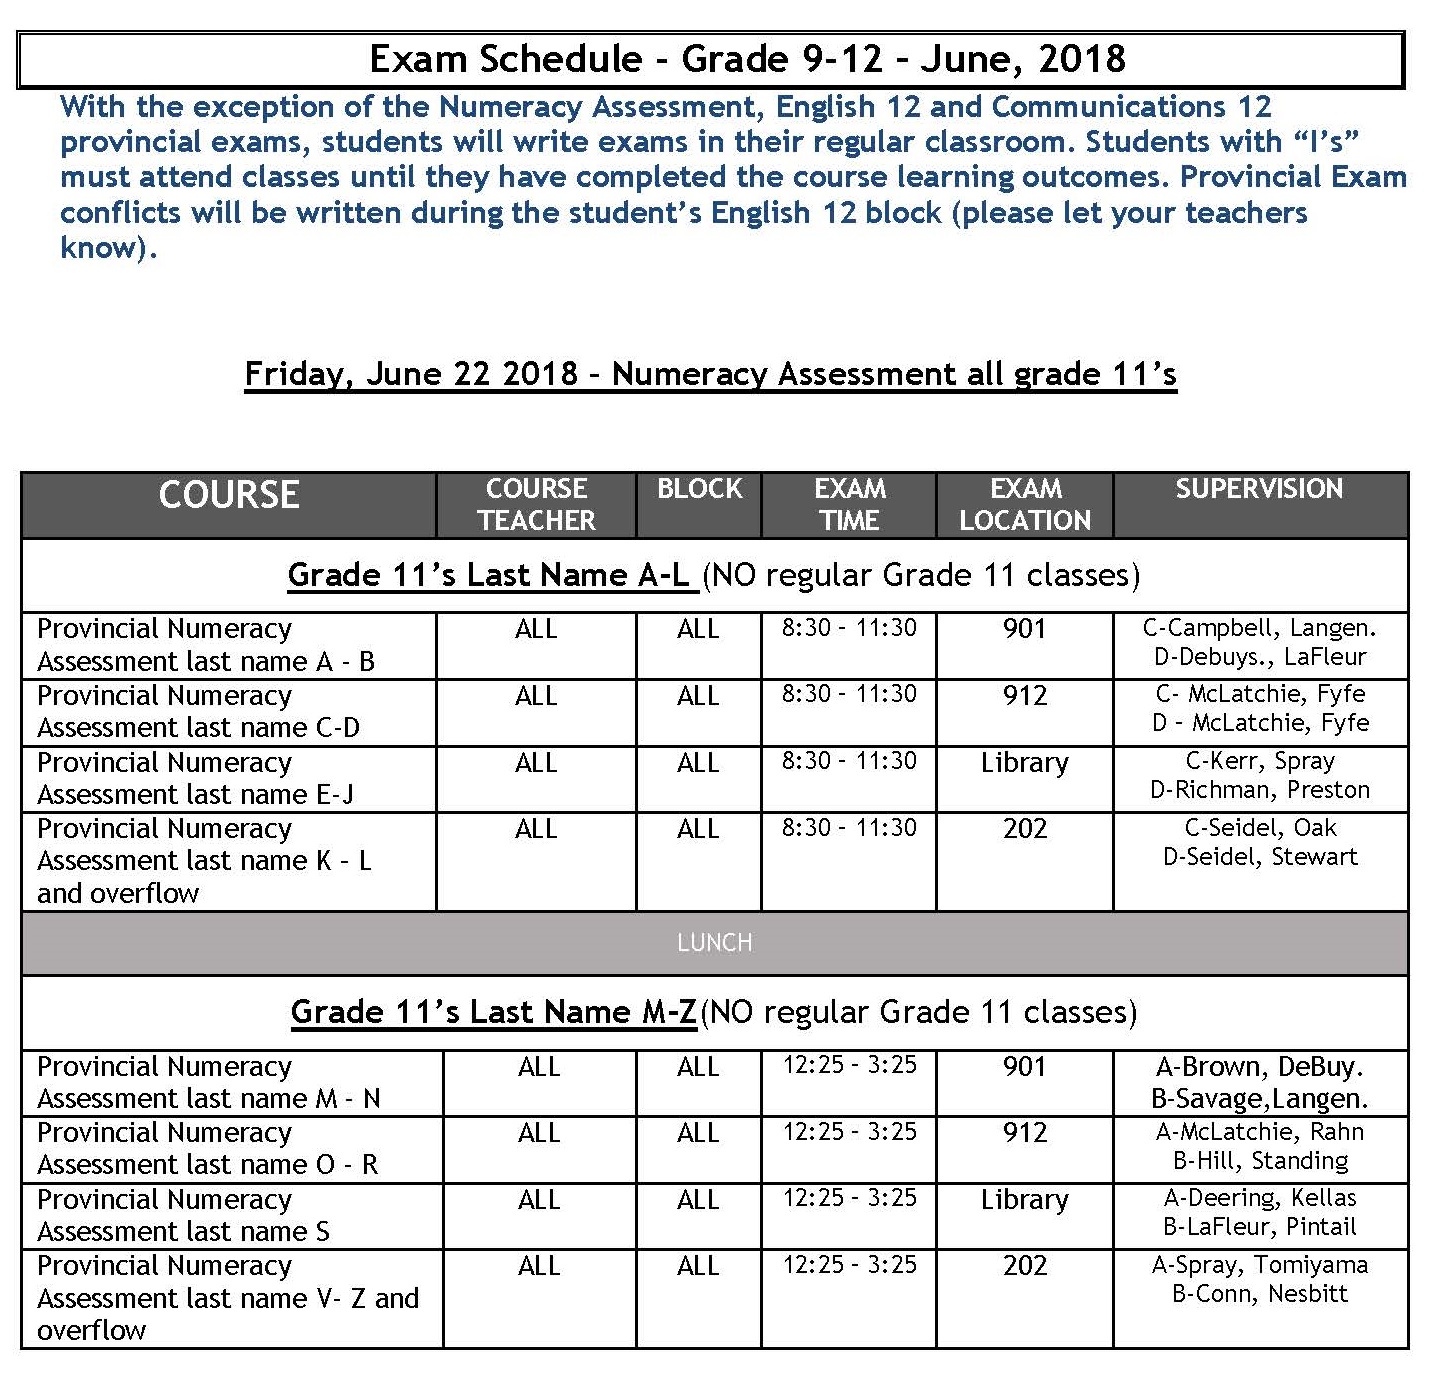 Exam Schedule Sem 2 June 2018_Page_1.jpg